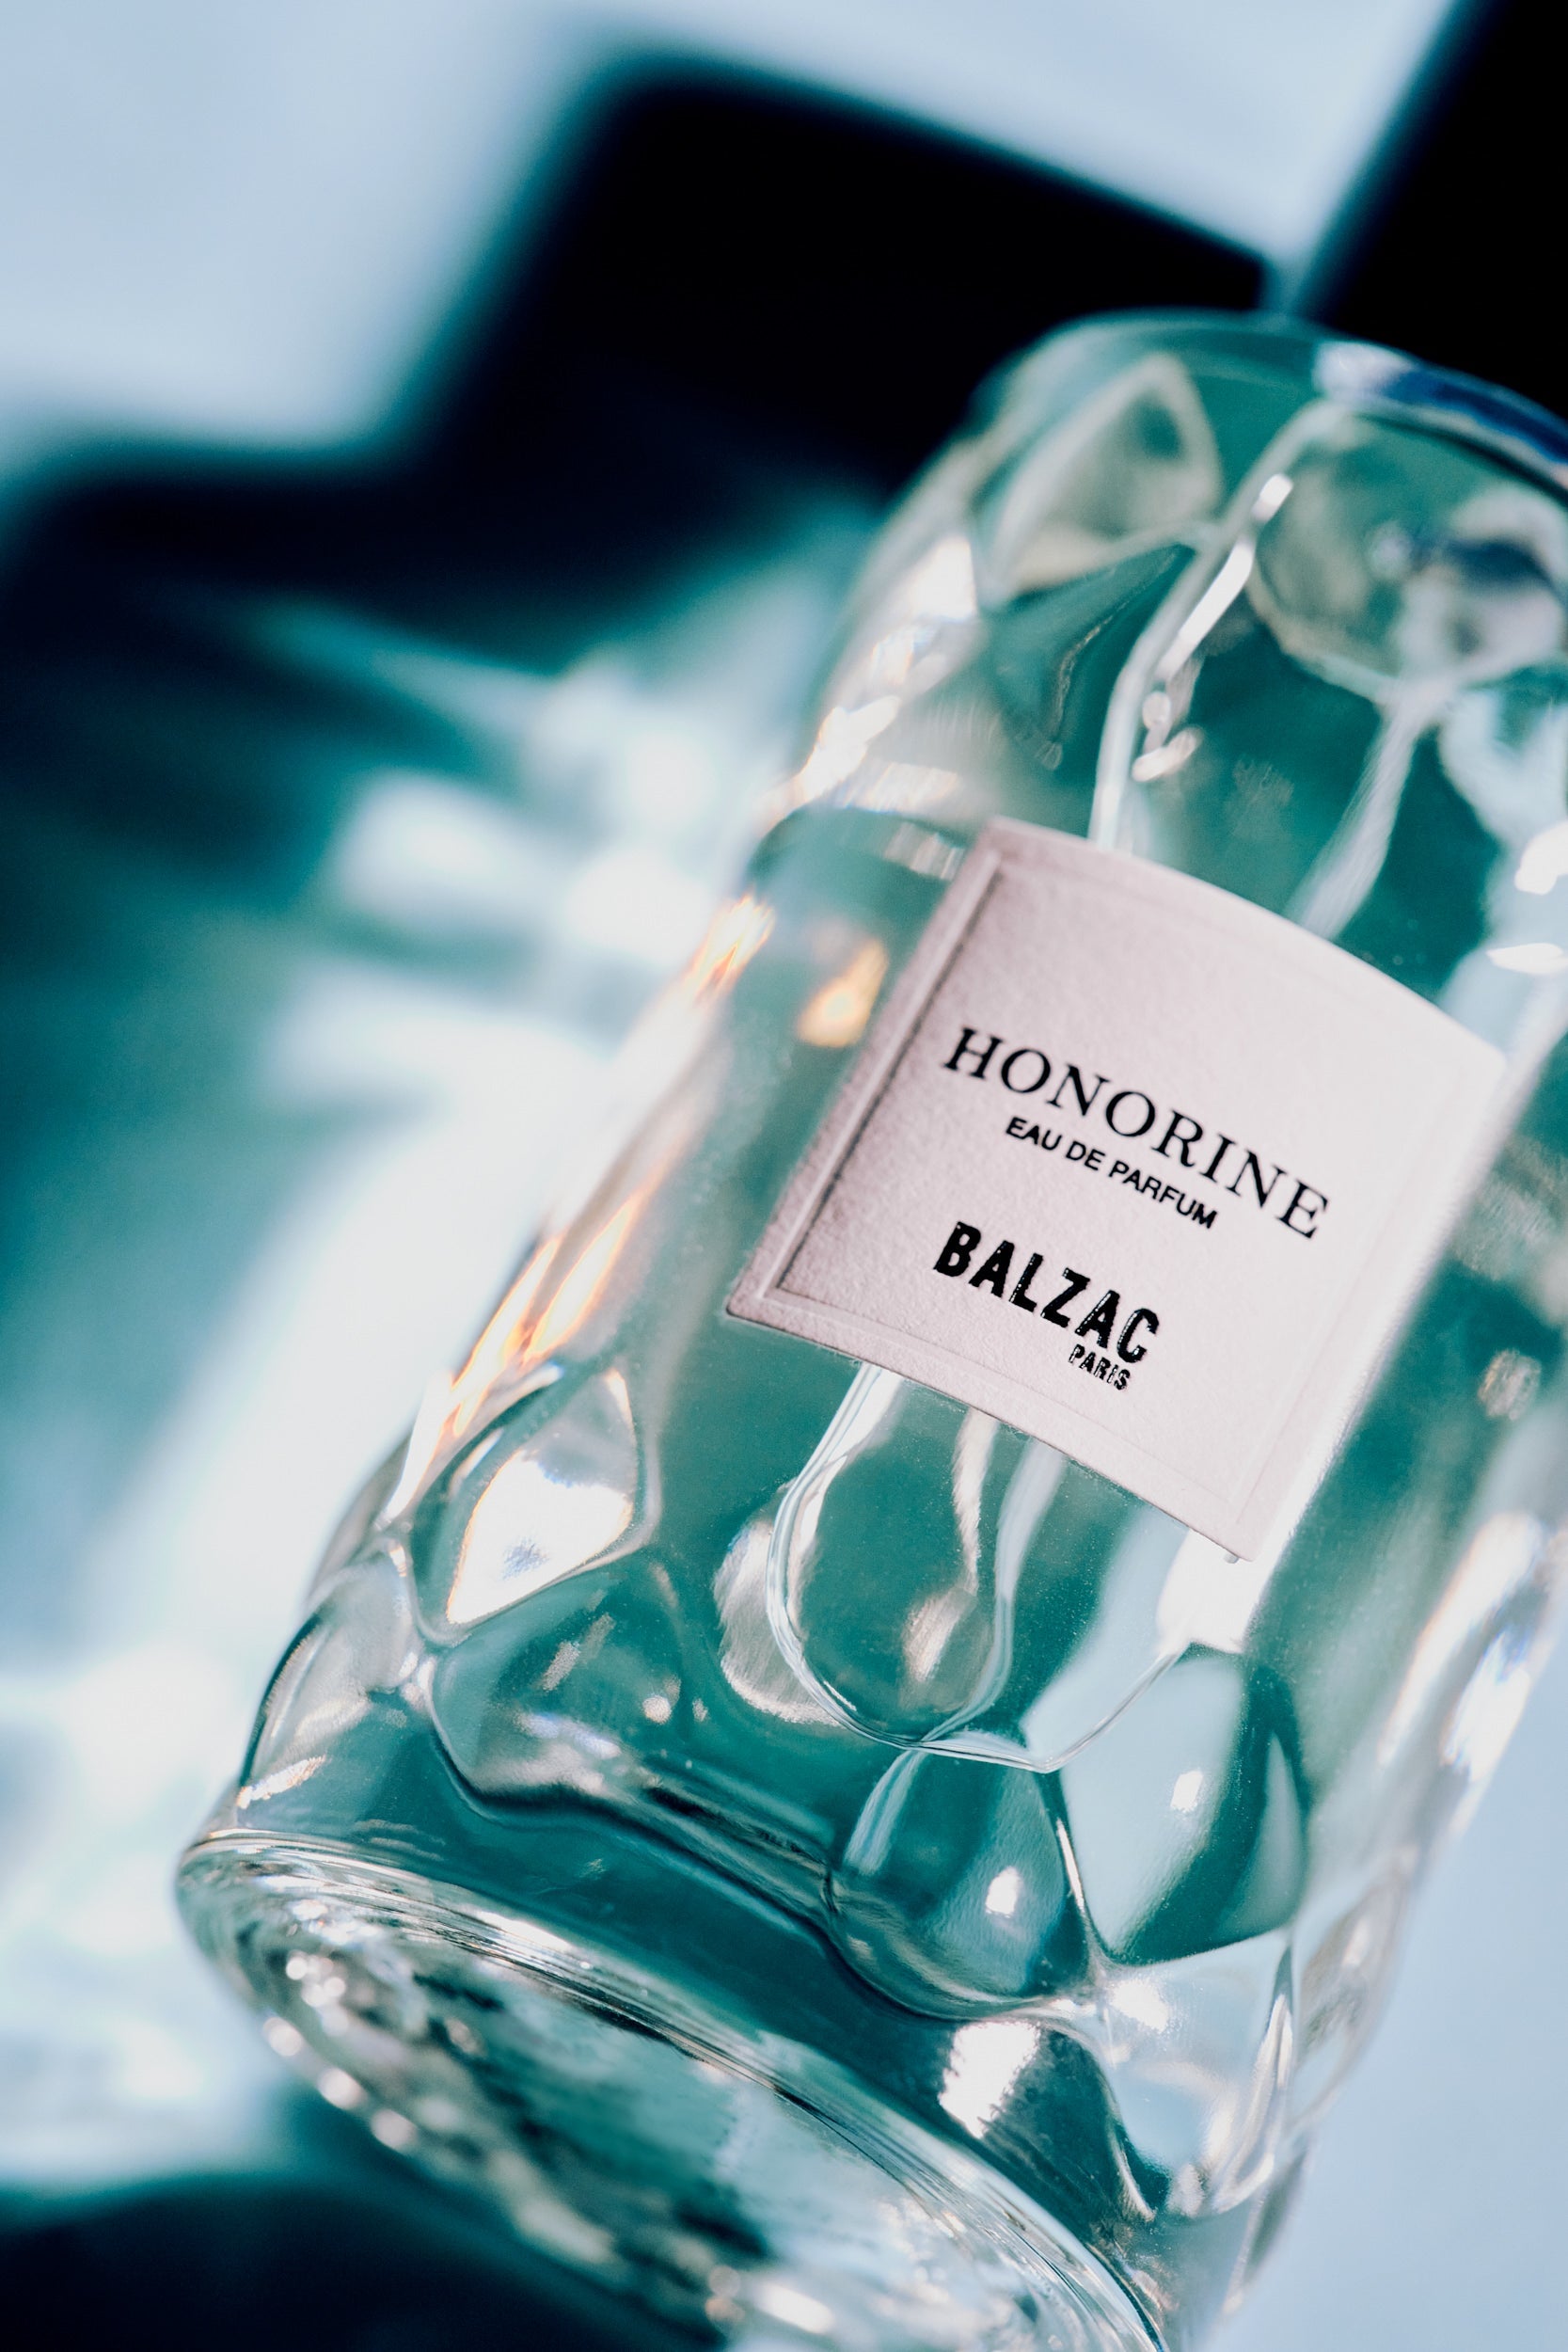 RAVE SIGNATURE Men's Eau De Parfum, Best Price in Nigeria